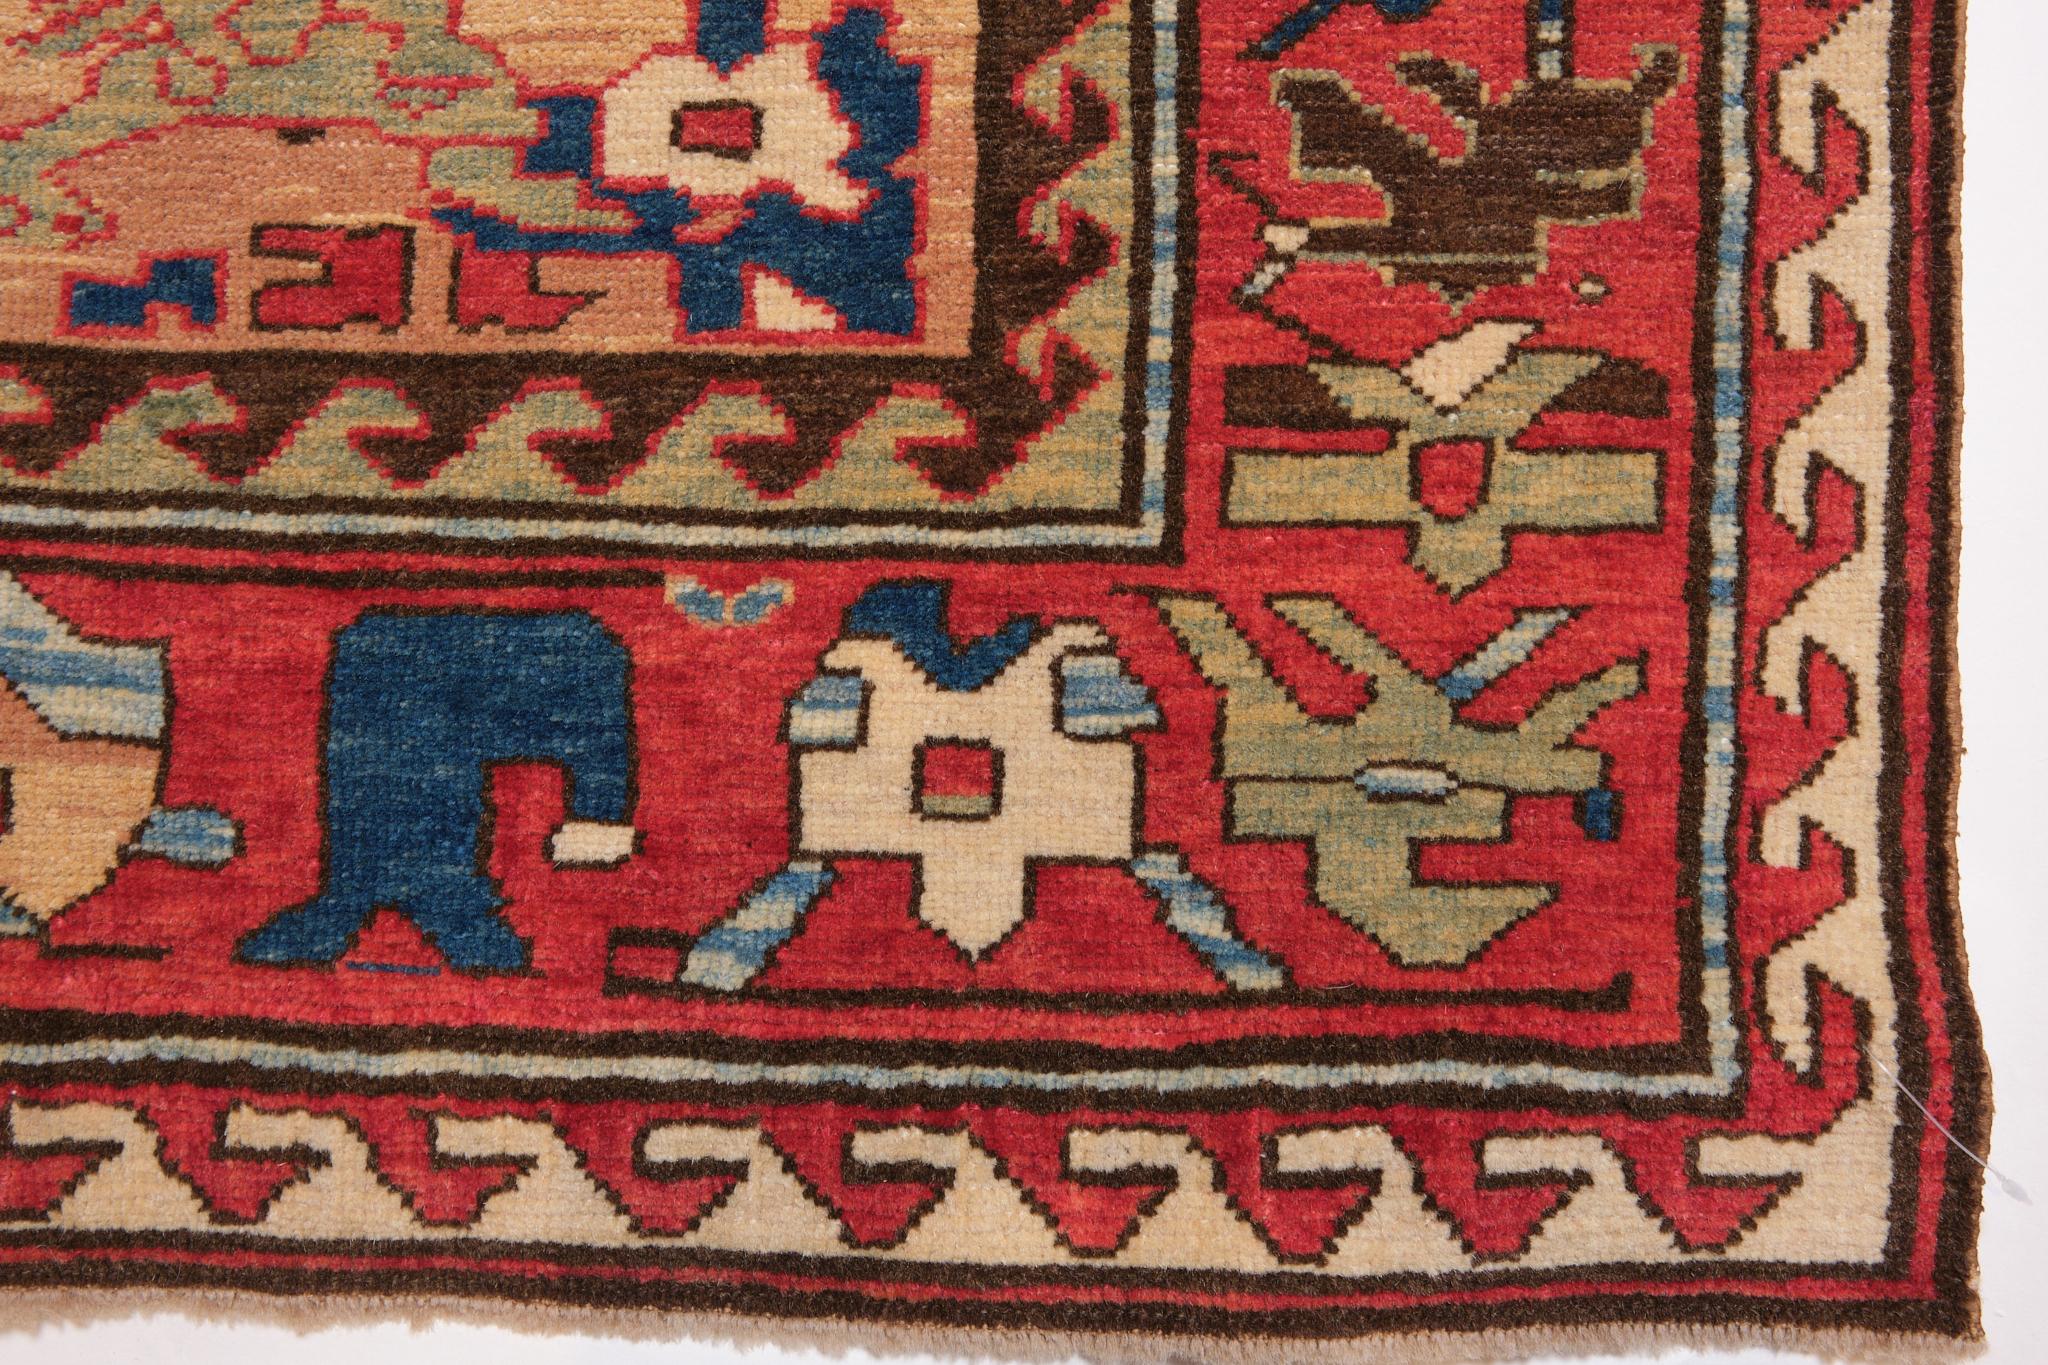 Turkish Ararat Rugs Azerbaijan Harshang Desing Carpet Caucasian Revival Rug Natural Dyed For Sale